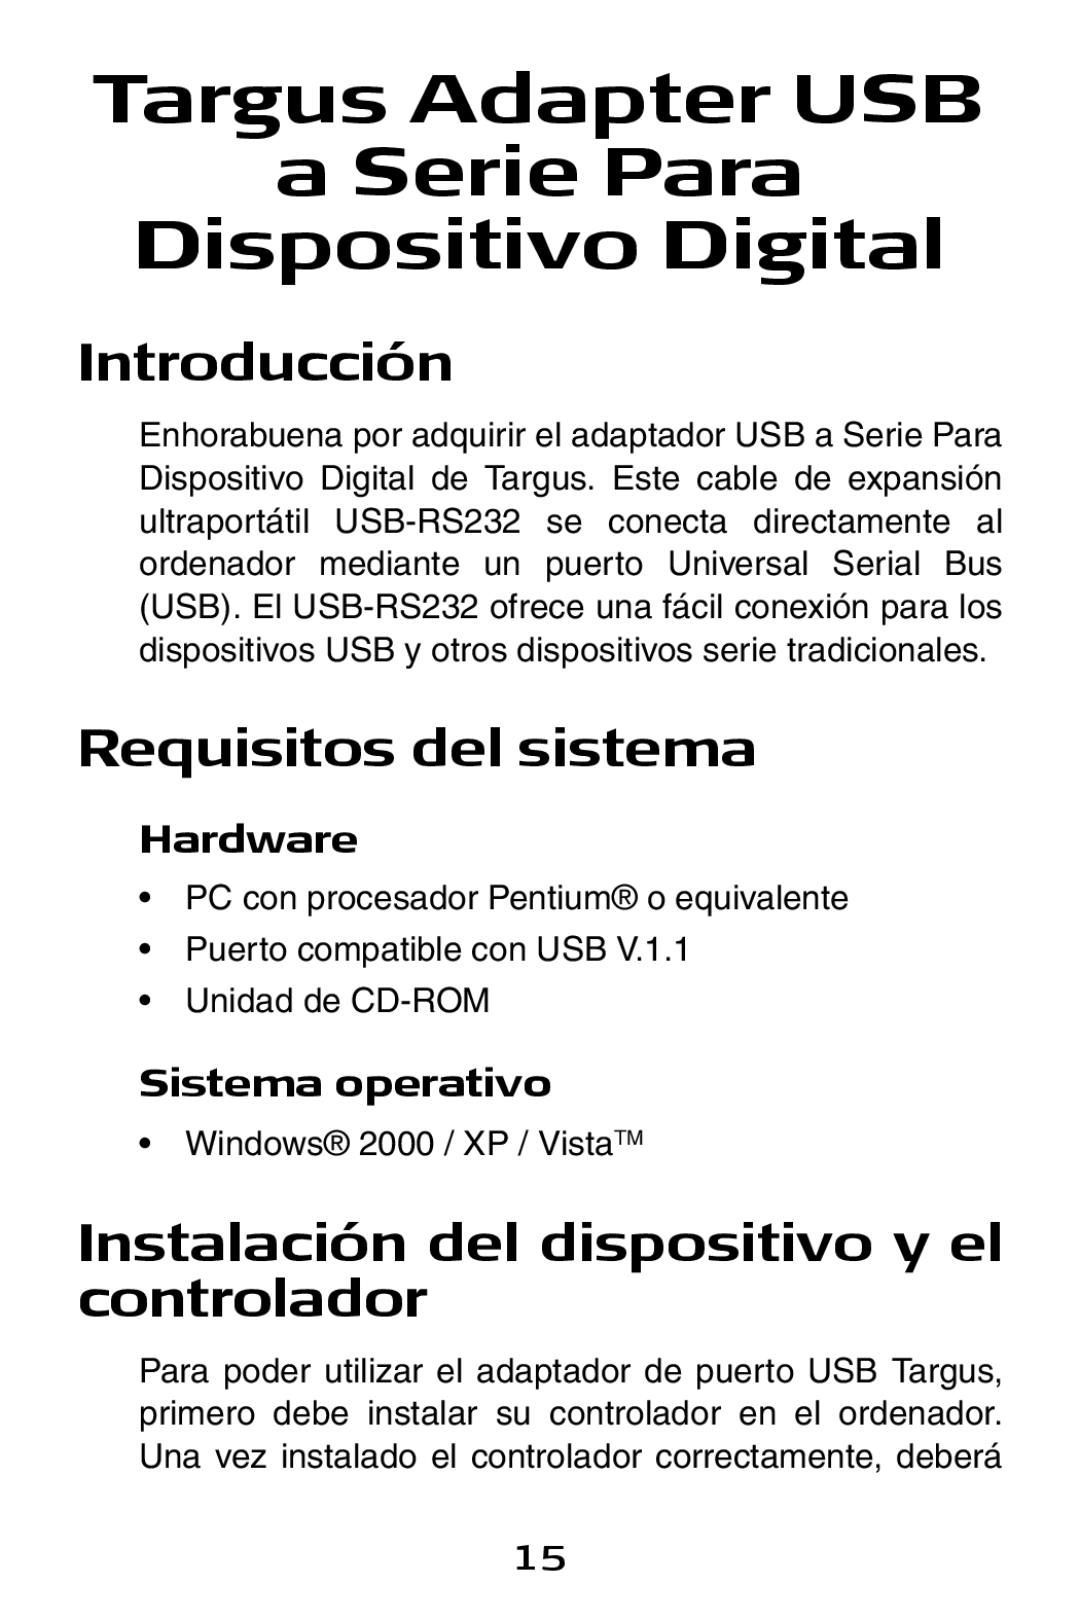 Targus USB to Serial Digital Device Adapter specifications Introducción, Requisitos del sistema 